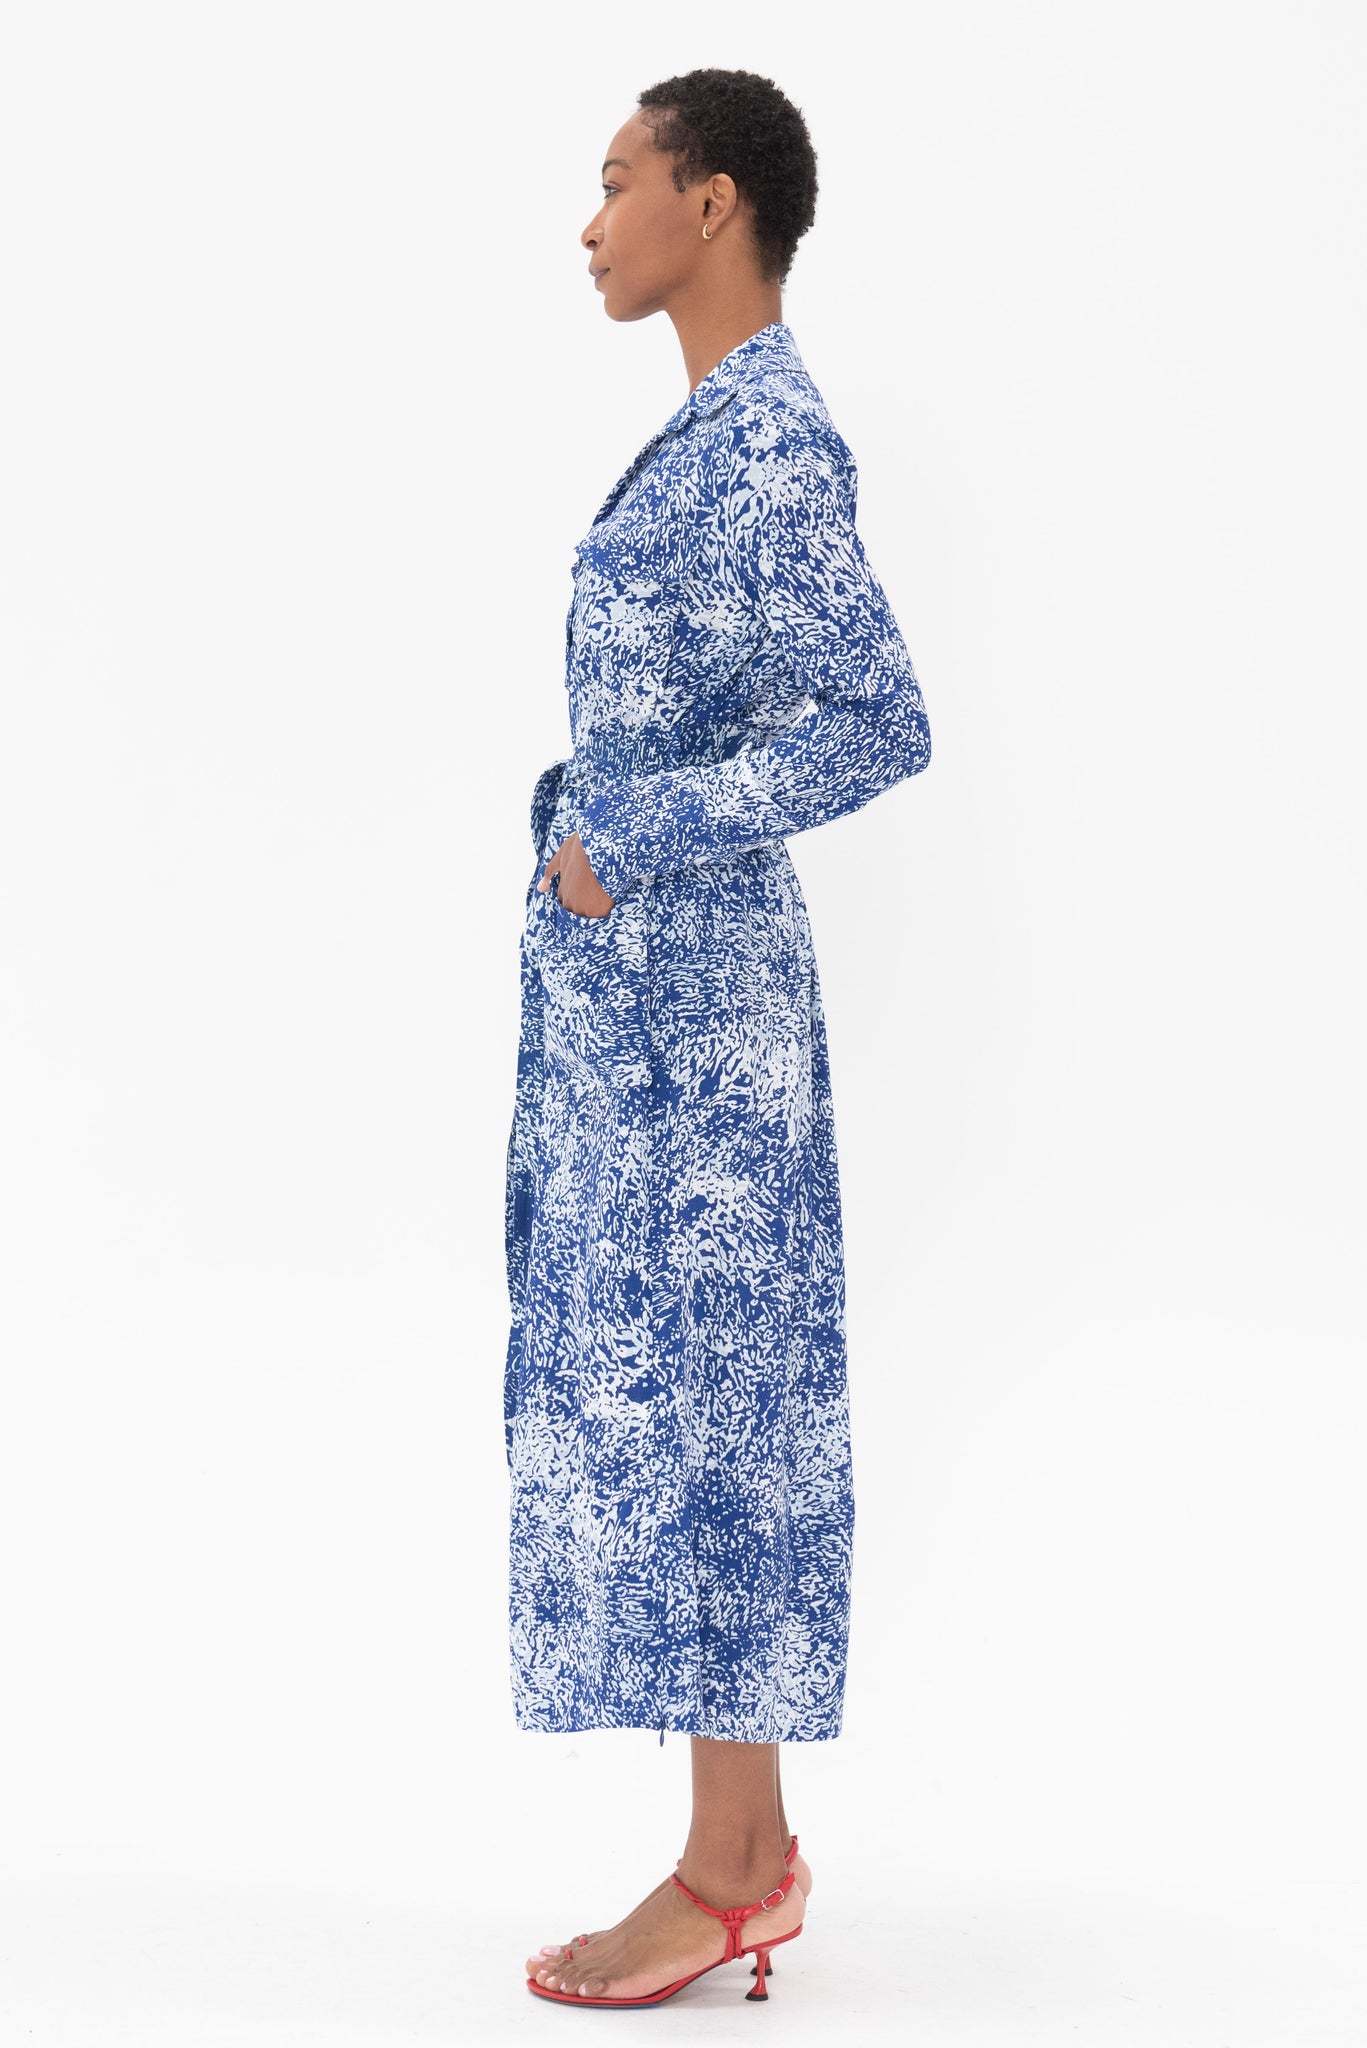 proenza schouler - Vanessa Dress In Printed Viscose Crepe, Cobalt